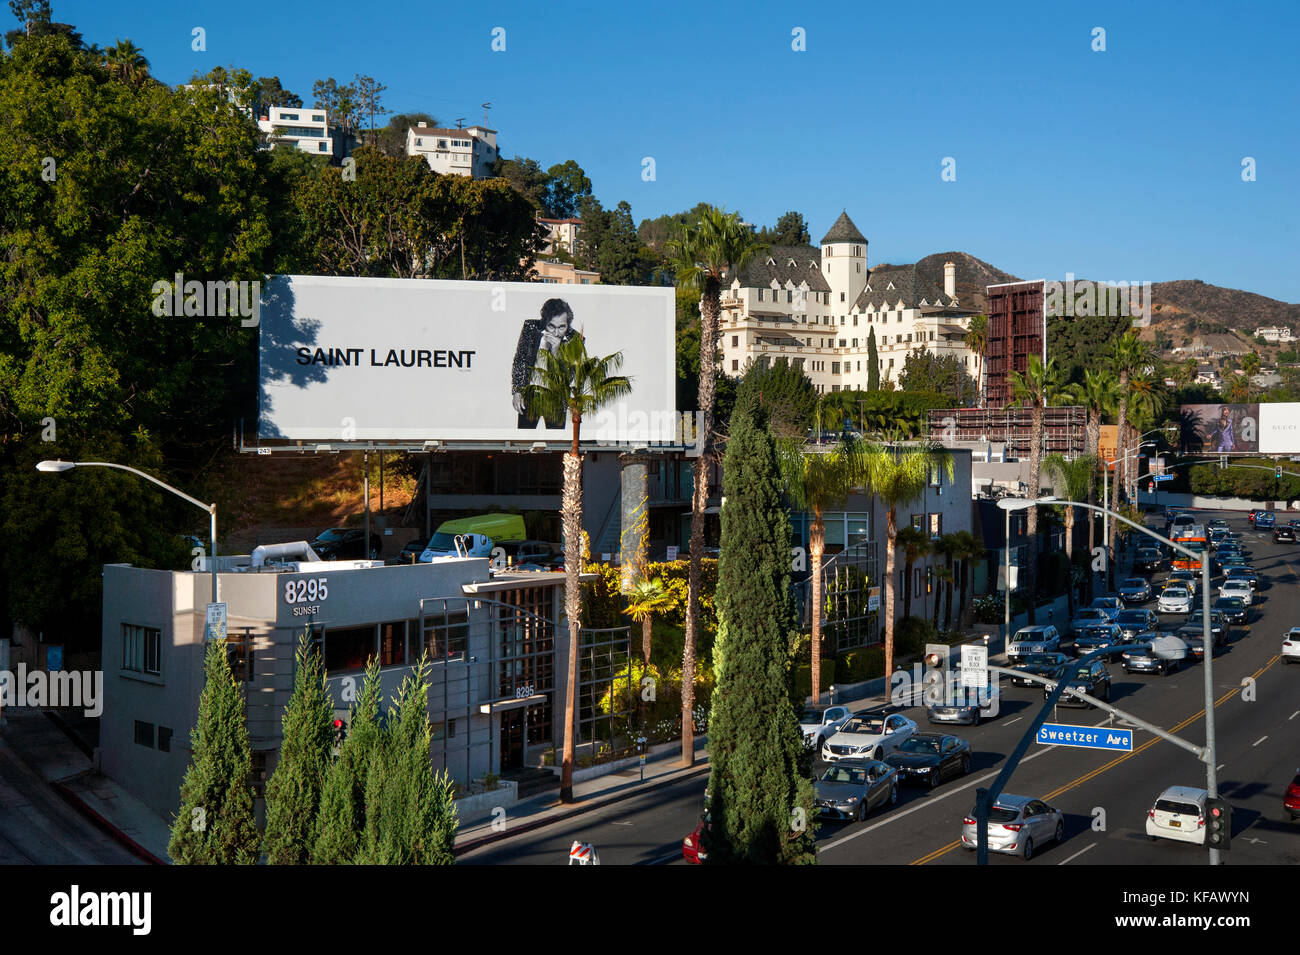 Blick von Sunset Strip vom Dach der Standard Hotel mit Saint Laurent Reklametafeln und das Chateau Marmont Hotel. Stockfoto